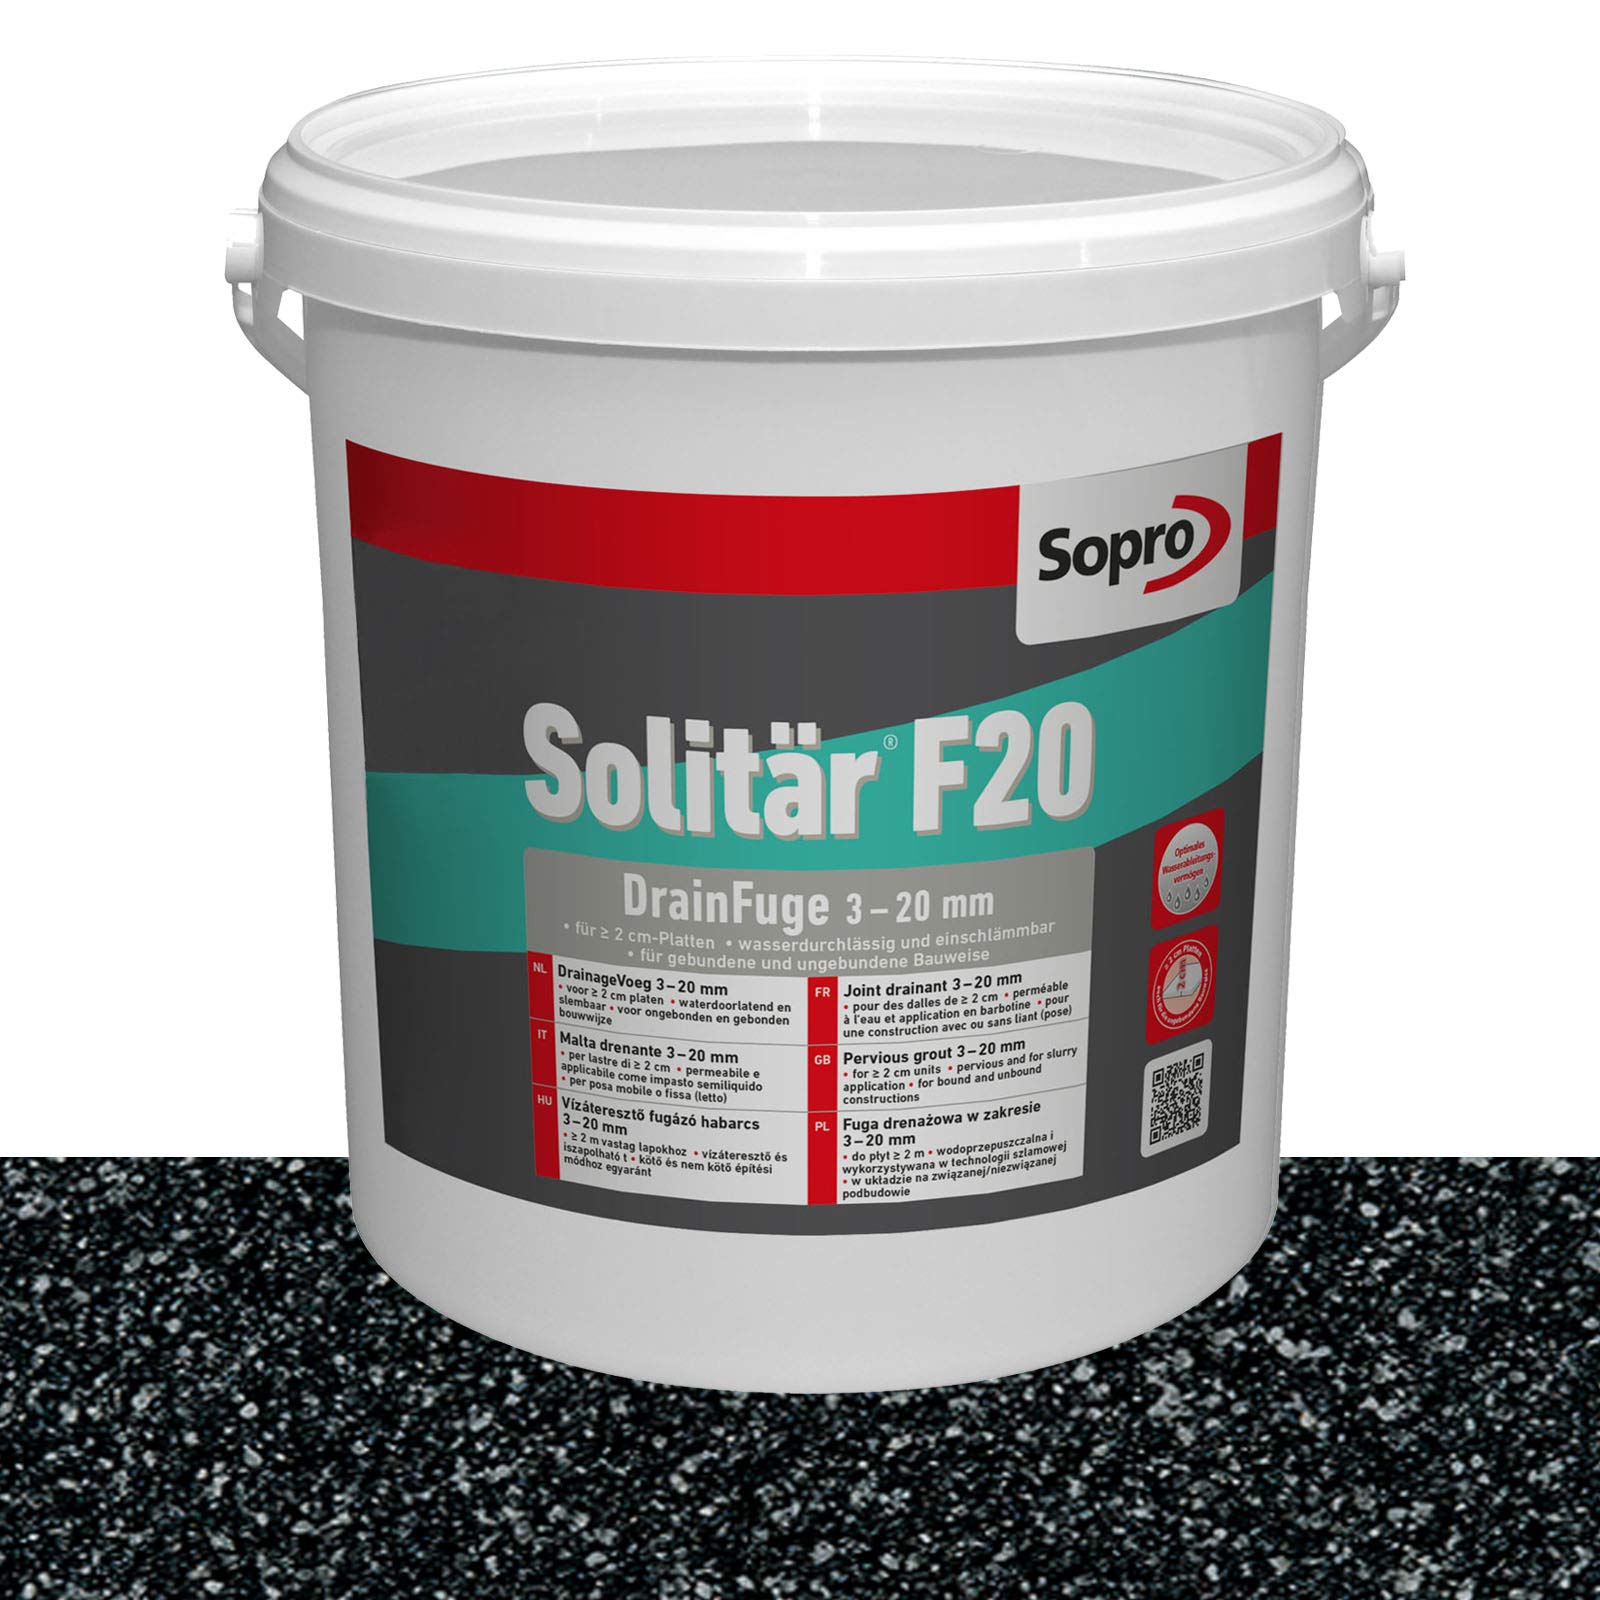 Sopro Designfuge Solitär F20 25kg (1, Anthrazit)